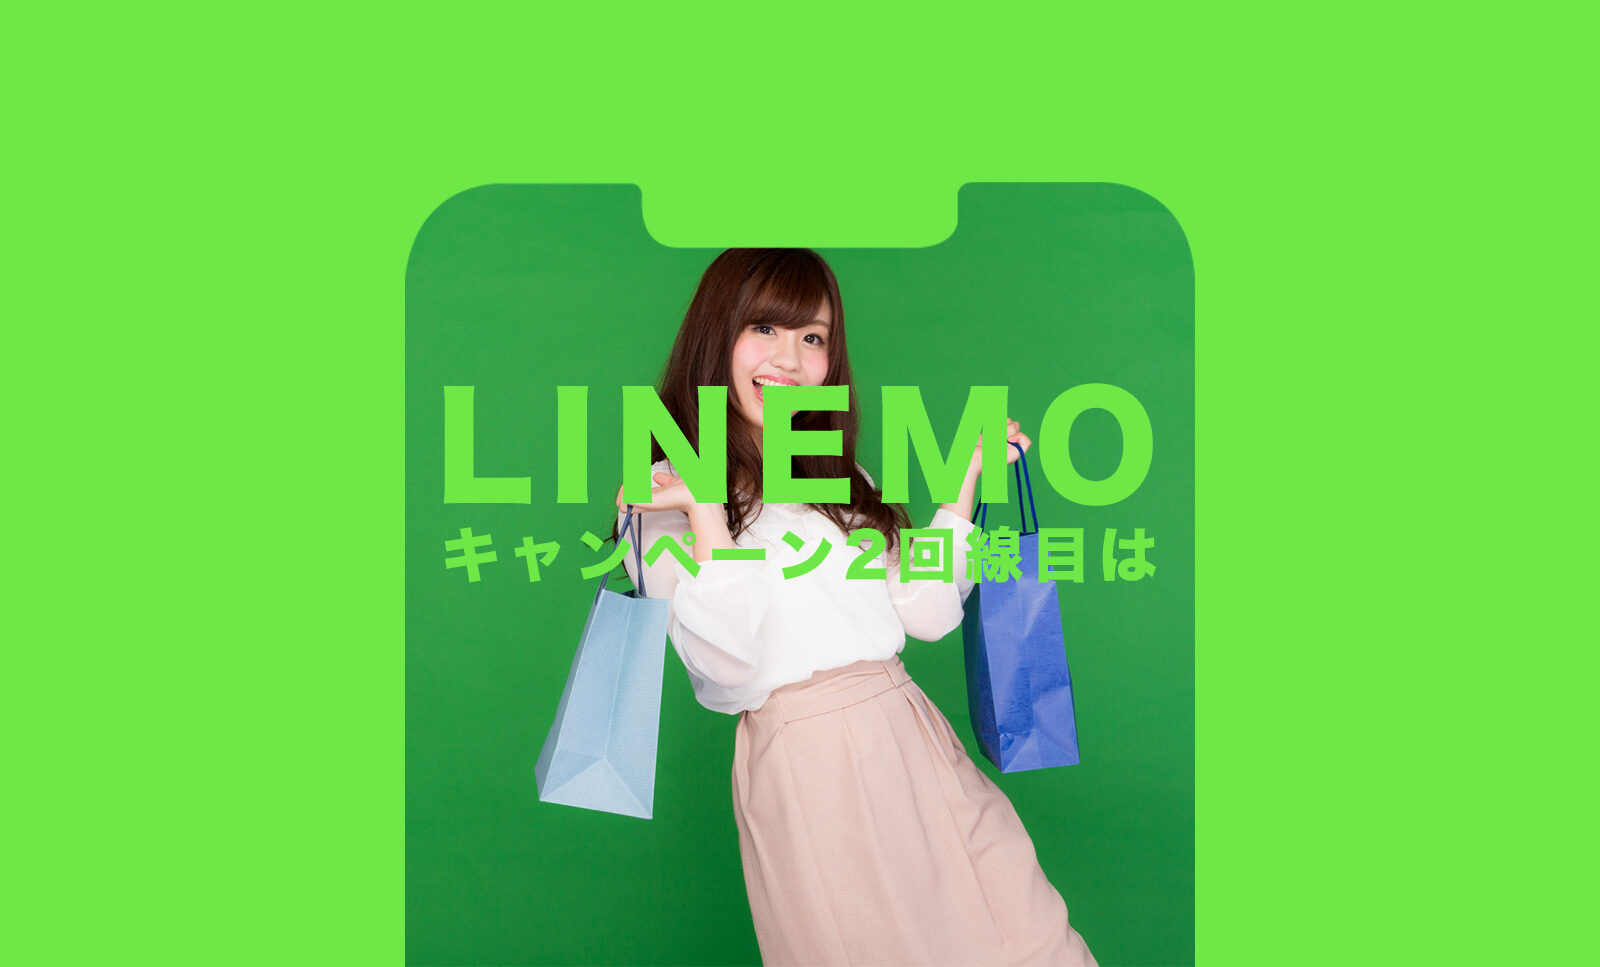 LINEMO(ラインモ)のキャンペーンは2回線目&2台目(複数回線)は対象になる？のサムネイル画像